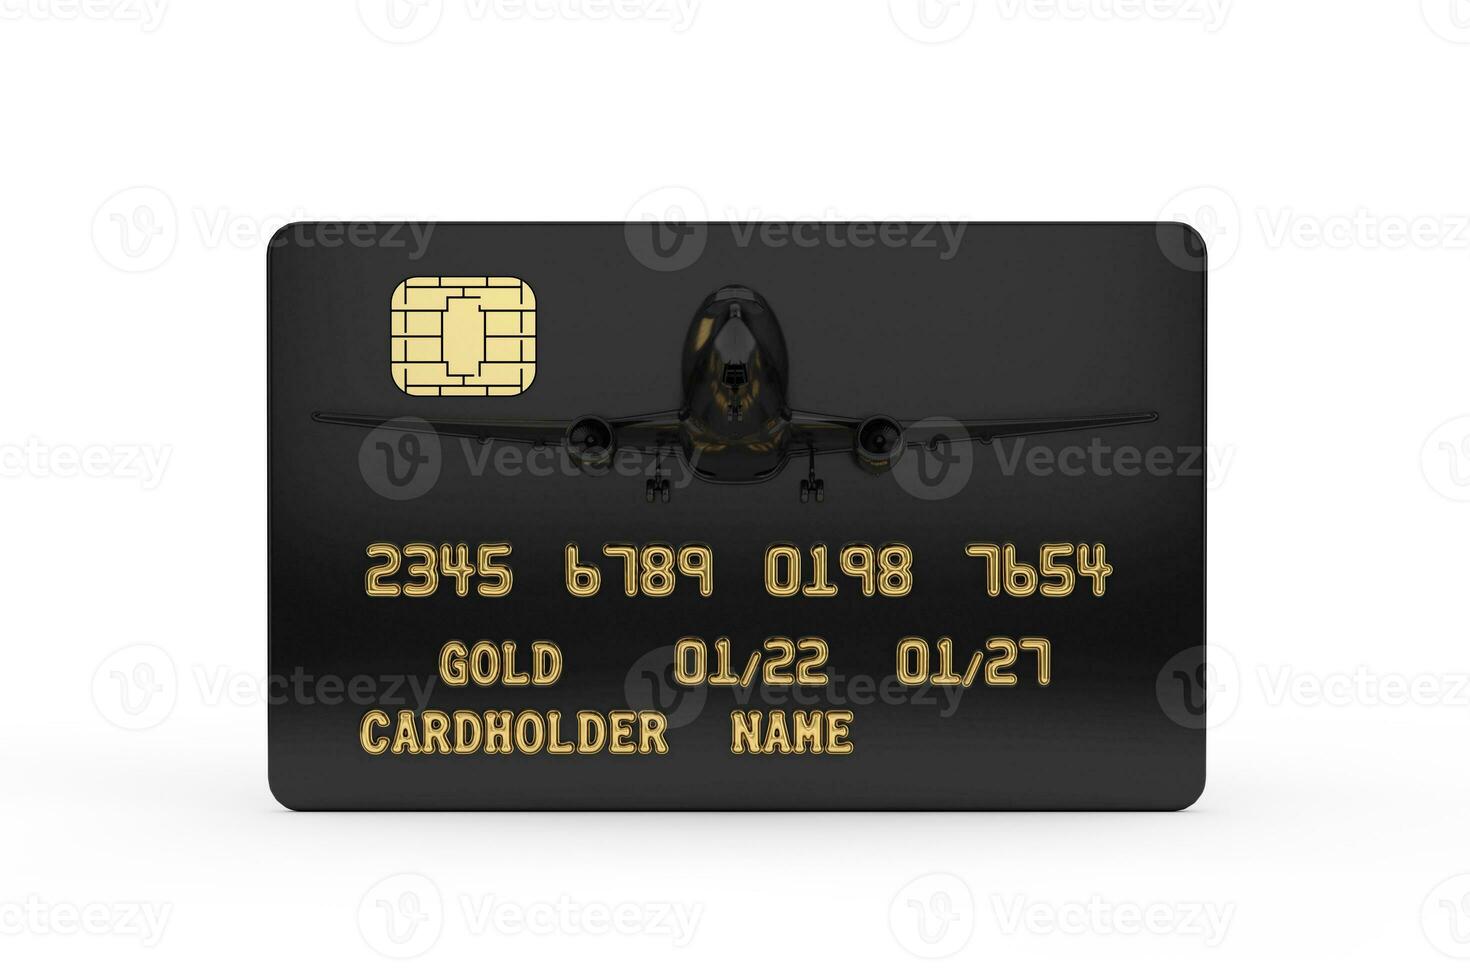 negro el plastico dorado crédito tarjeta con chip y chorro avión. 3d representación foto